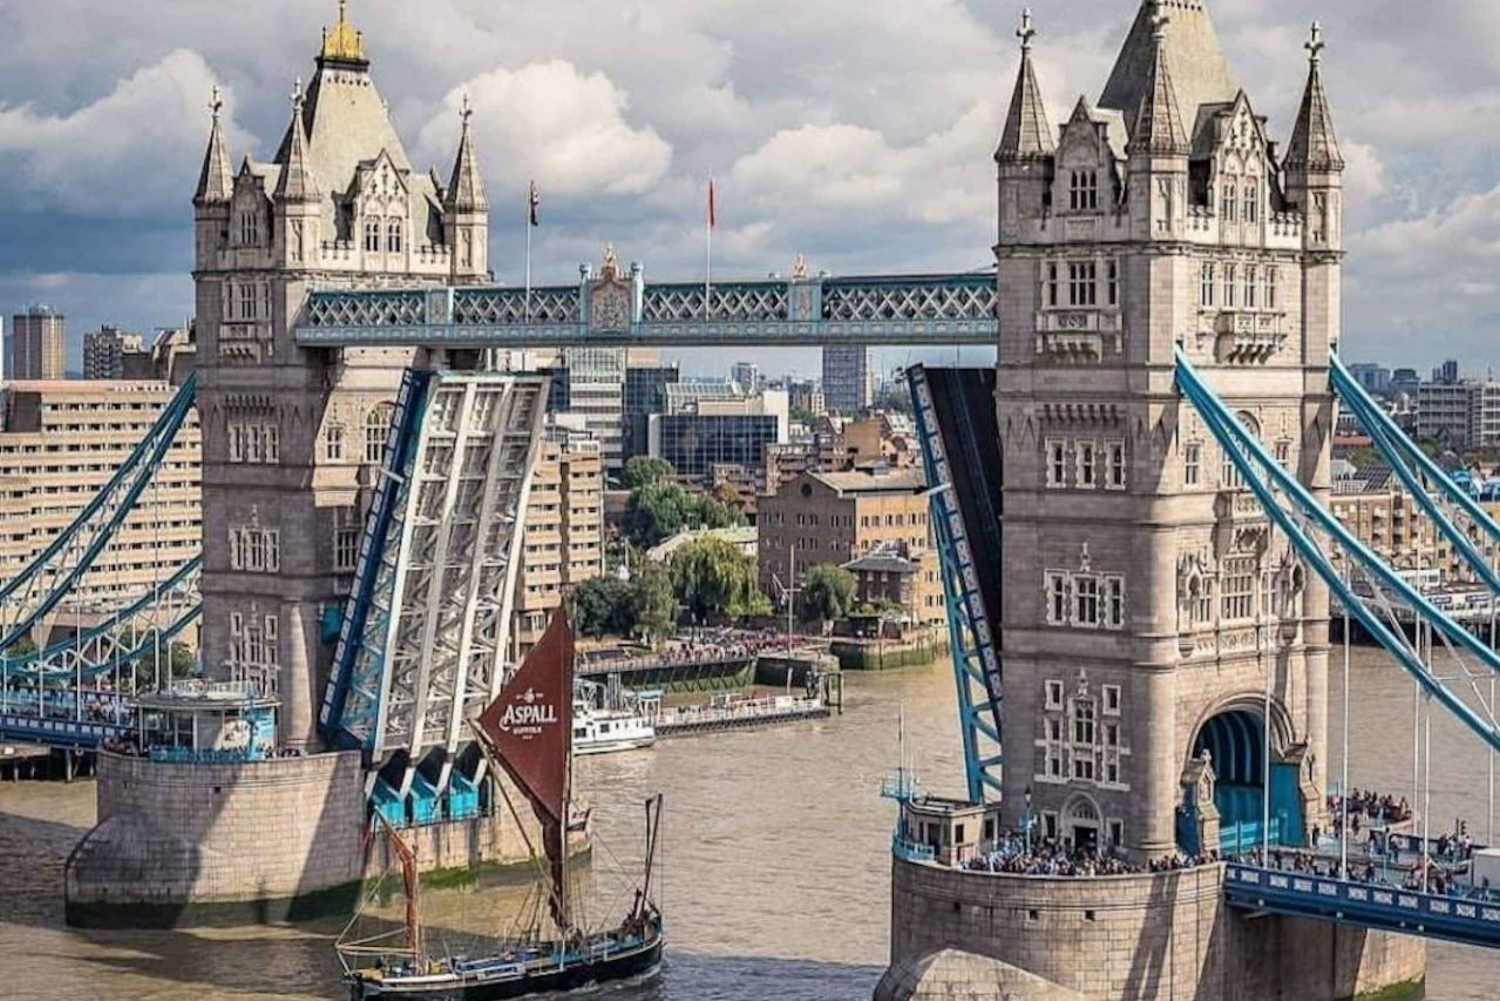 London: Westminster Walking Tour & Visit Tower Bridge